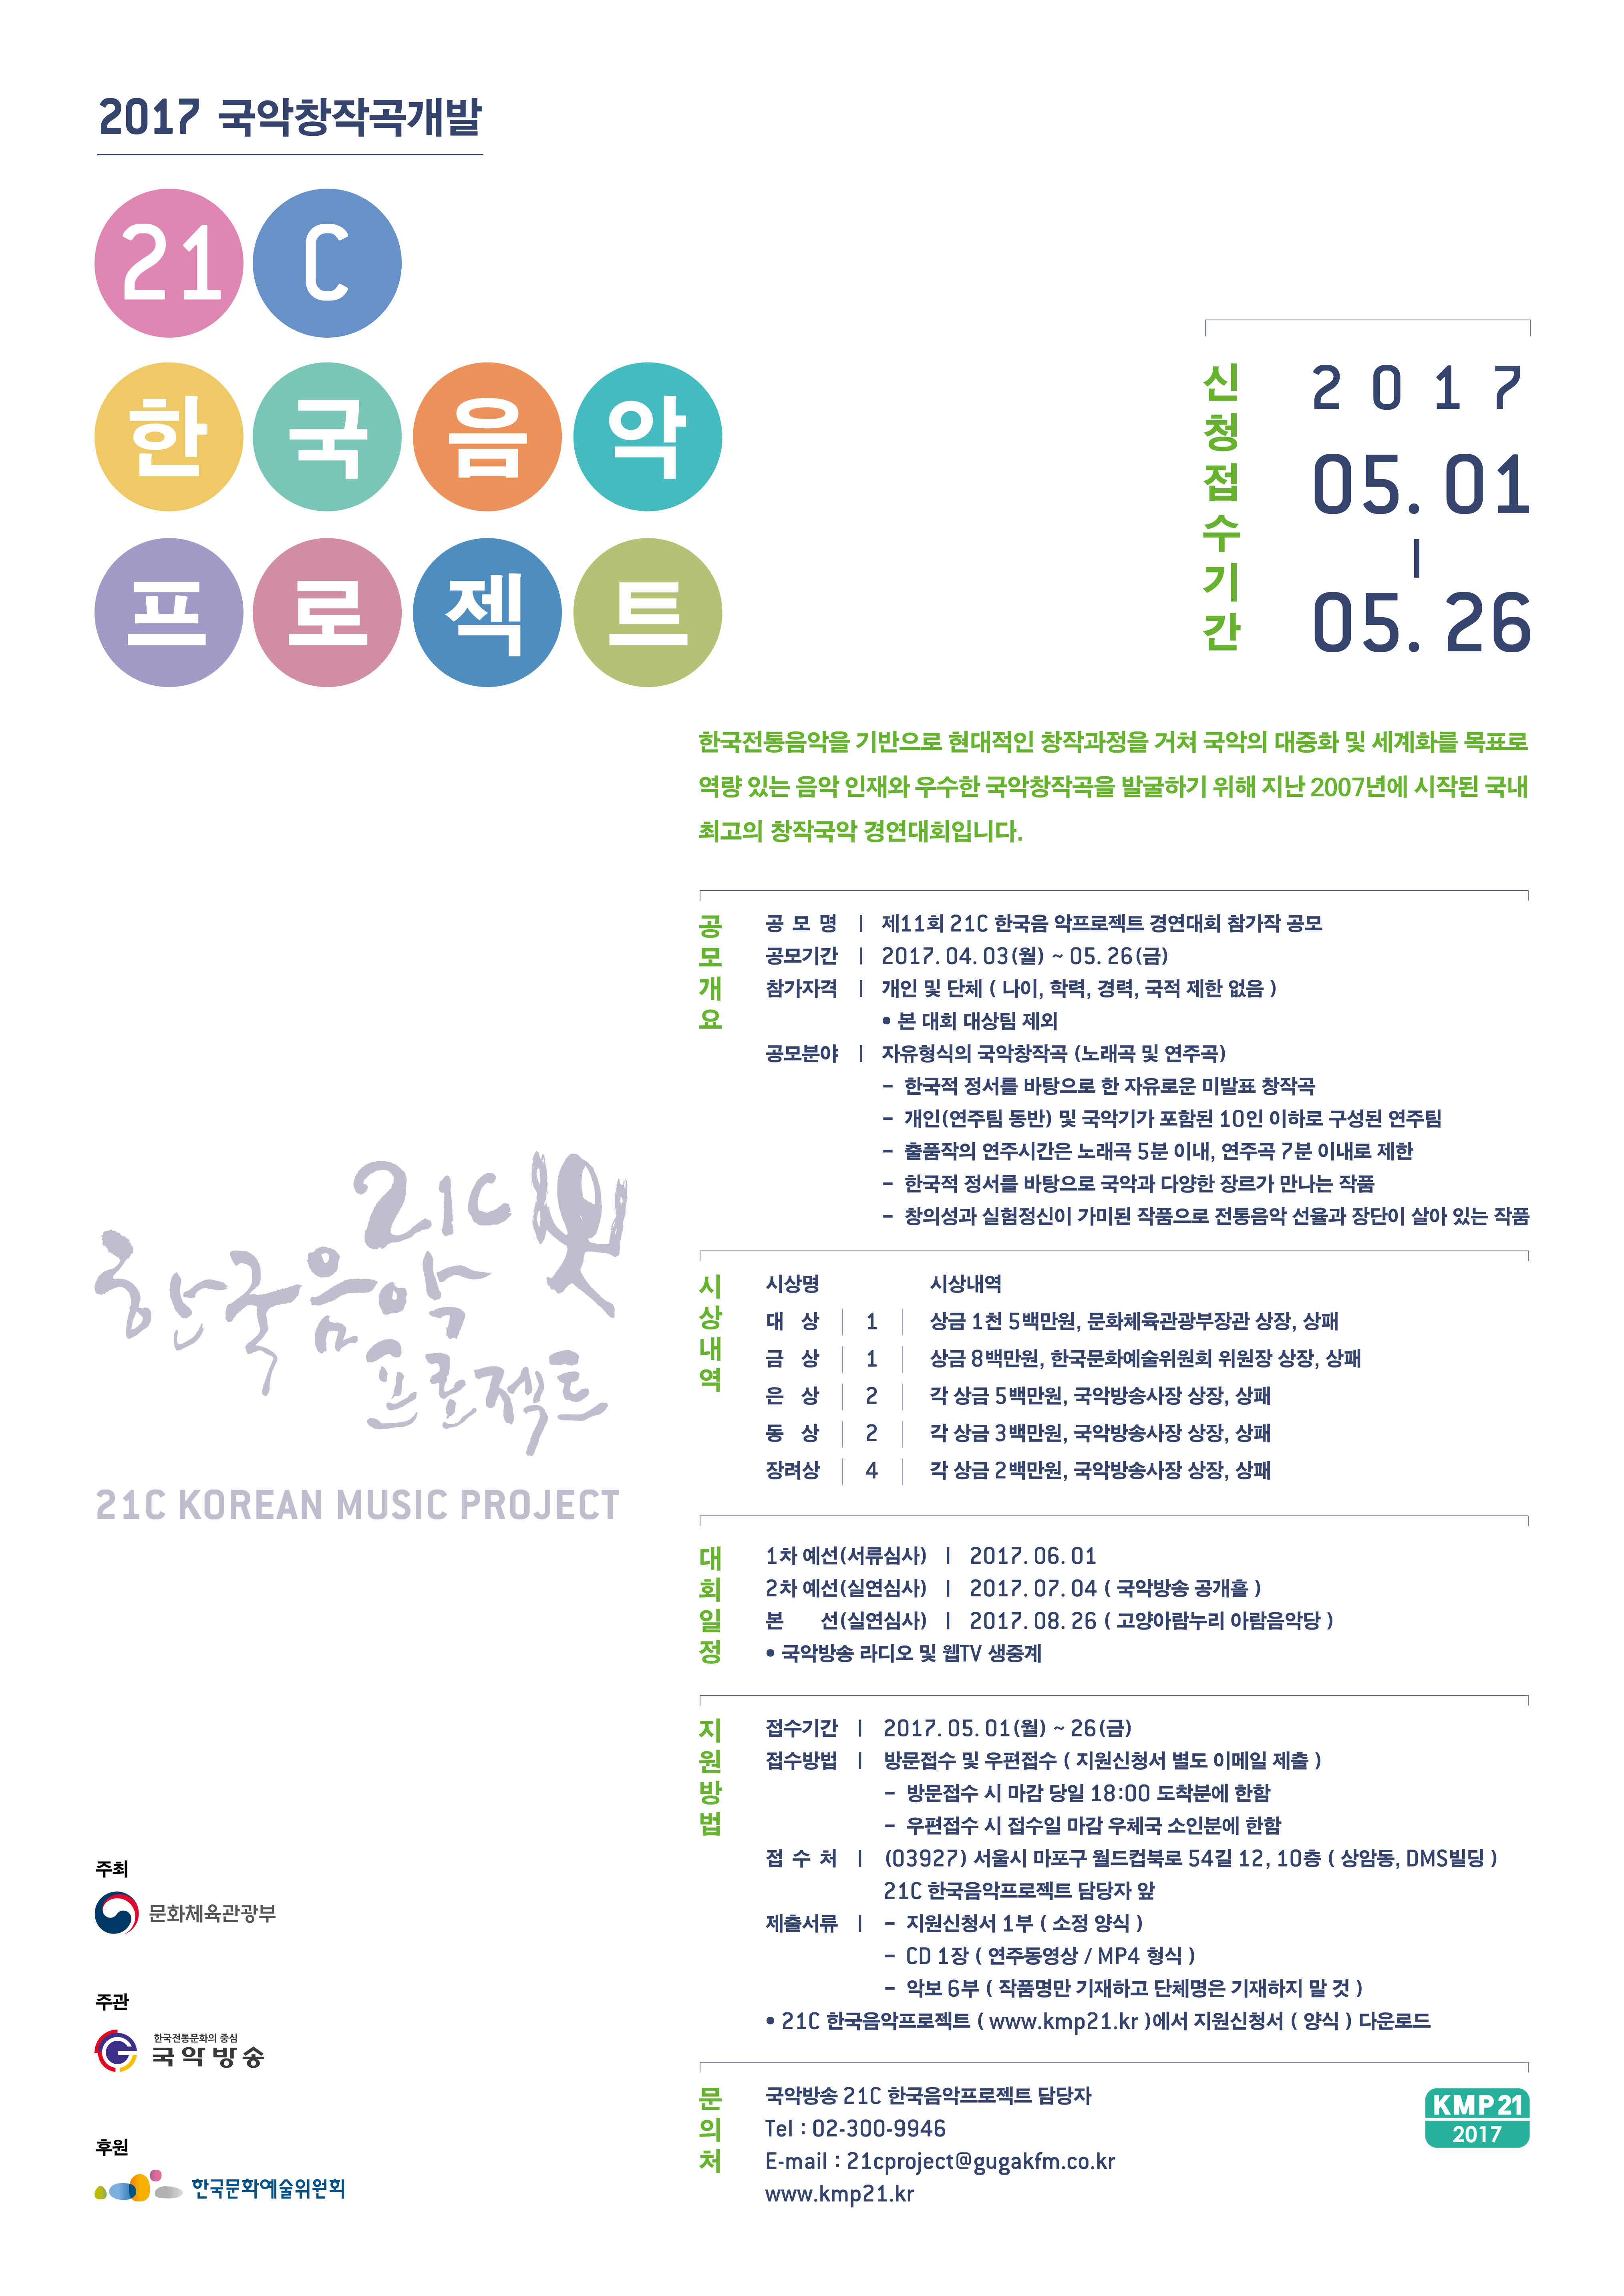 2017년도 21C 한국음악프로젝트 포스터